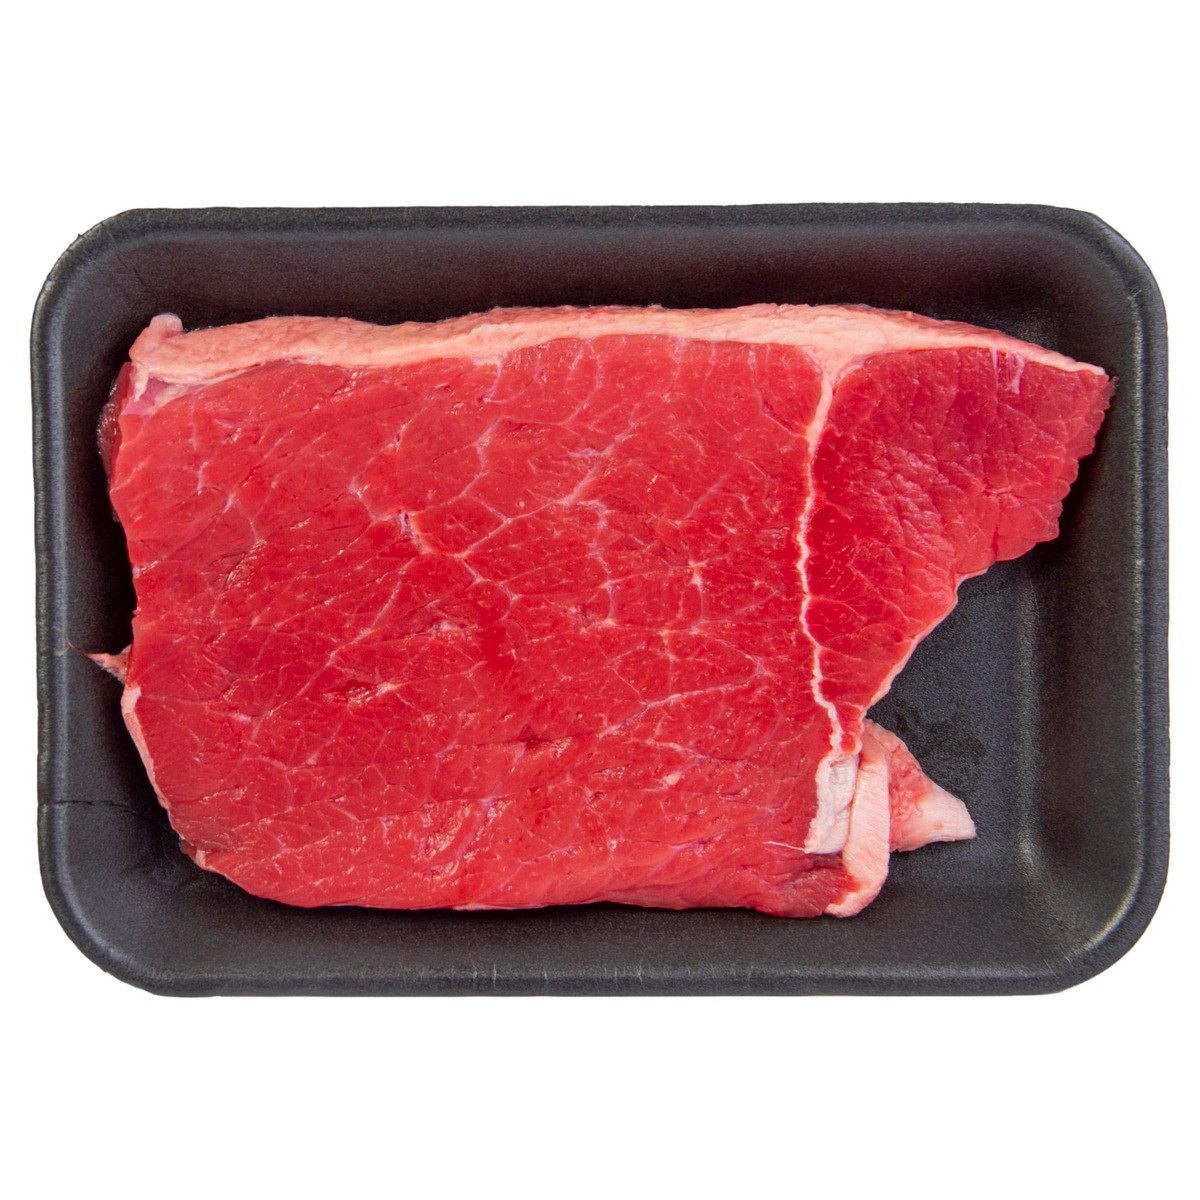 New Zealand Beef Silverside Steak 300 g